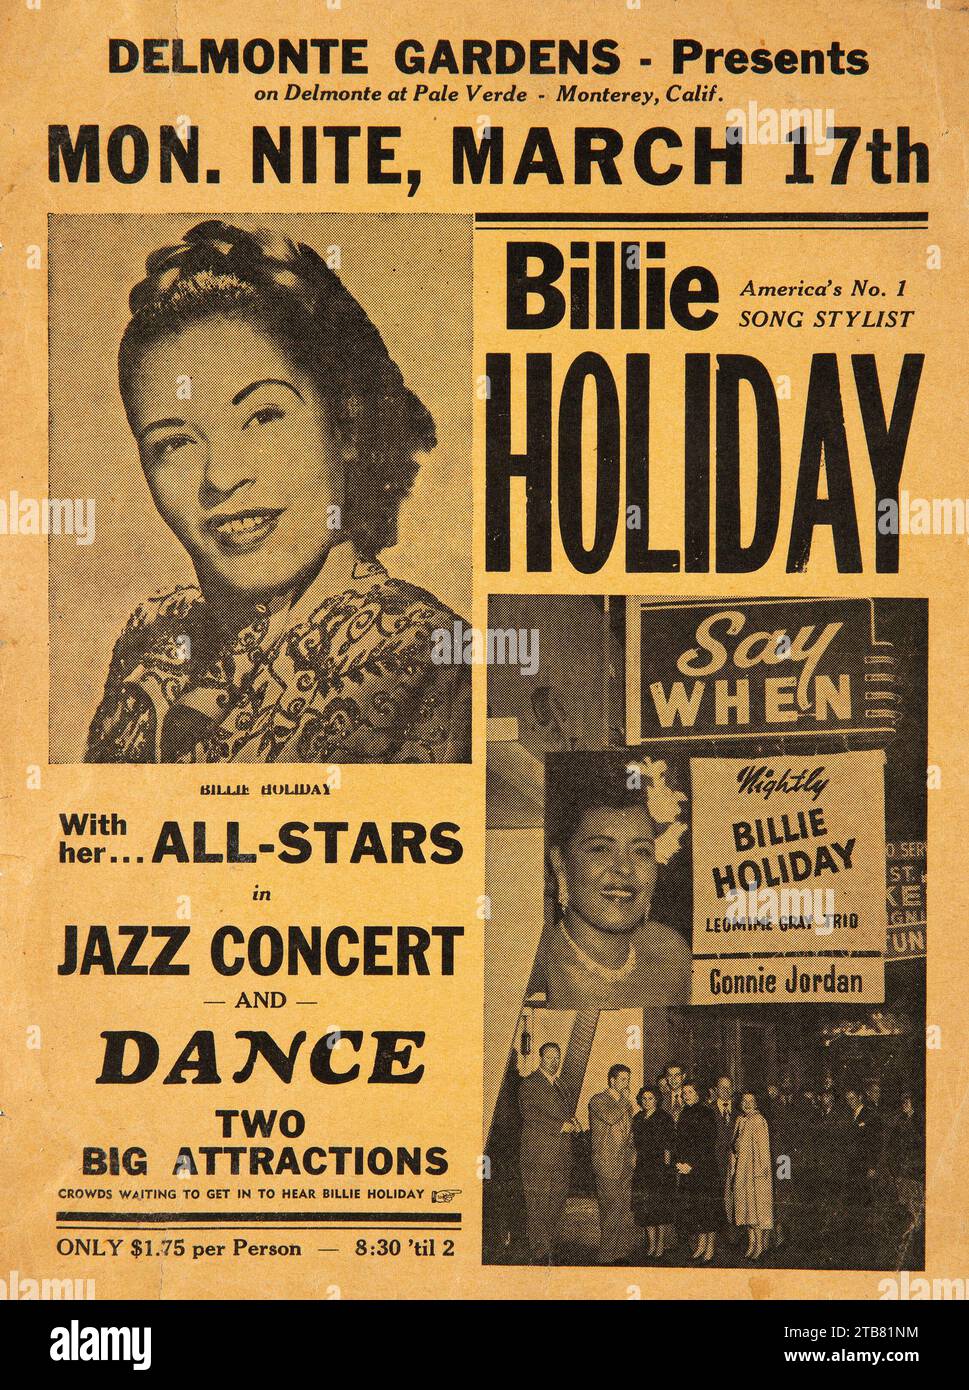 Billie Holiday 1958 large Jazz concert Handbill - flyer - Delmonte Gardens, Monterey, Californie Banque D'Images